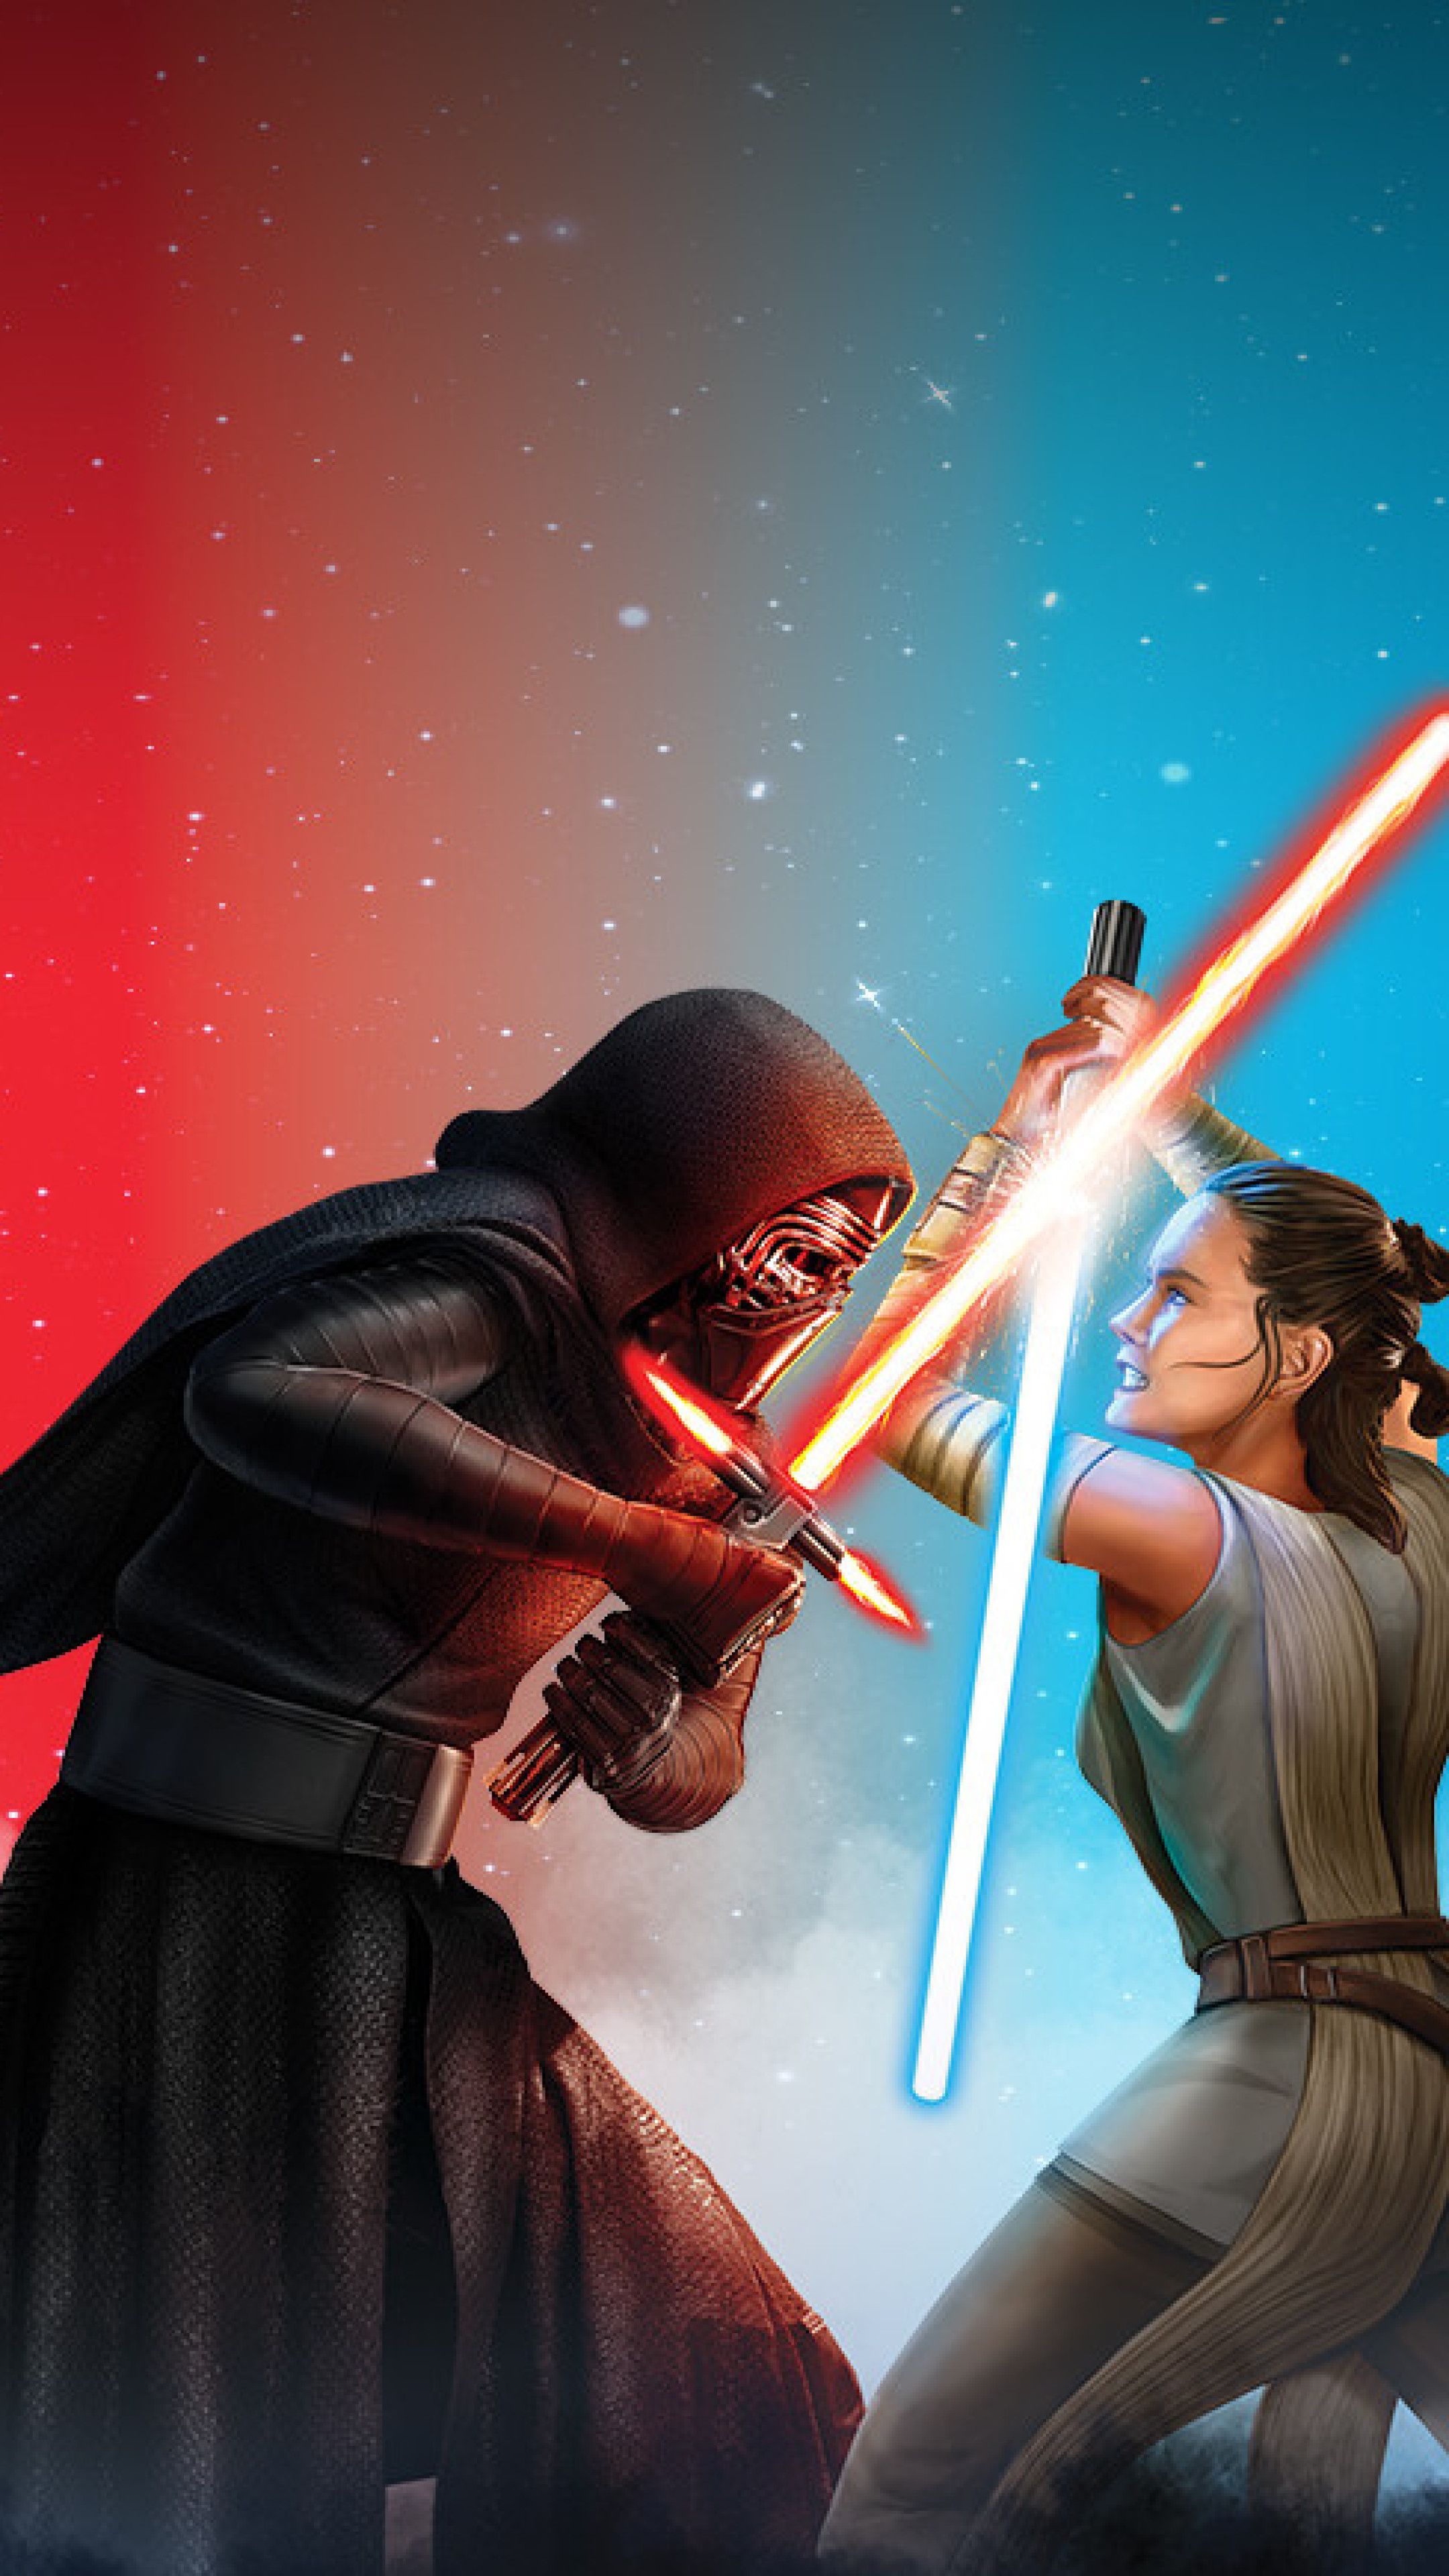 Star Wars Galaxy Of Heroes Sony Xperia X, XZ, Z5 Premium